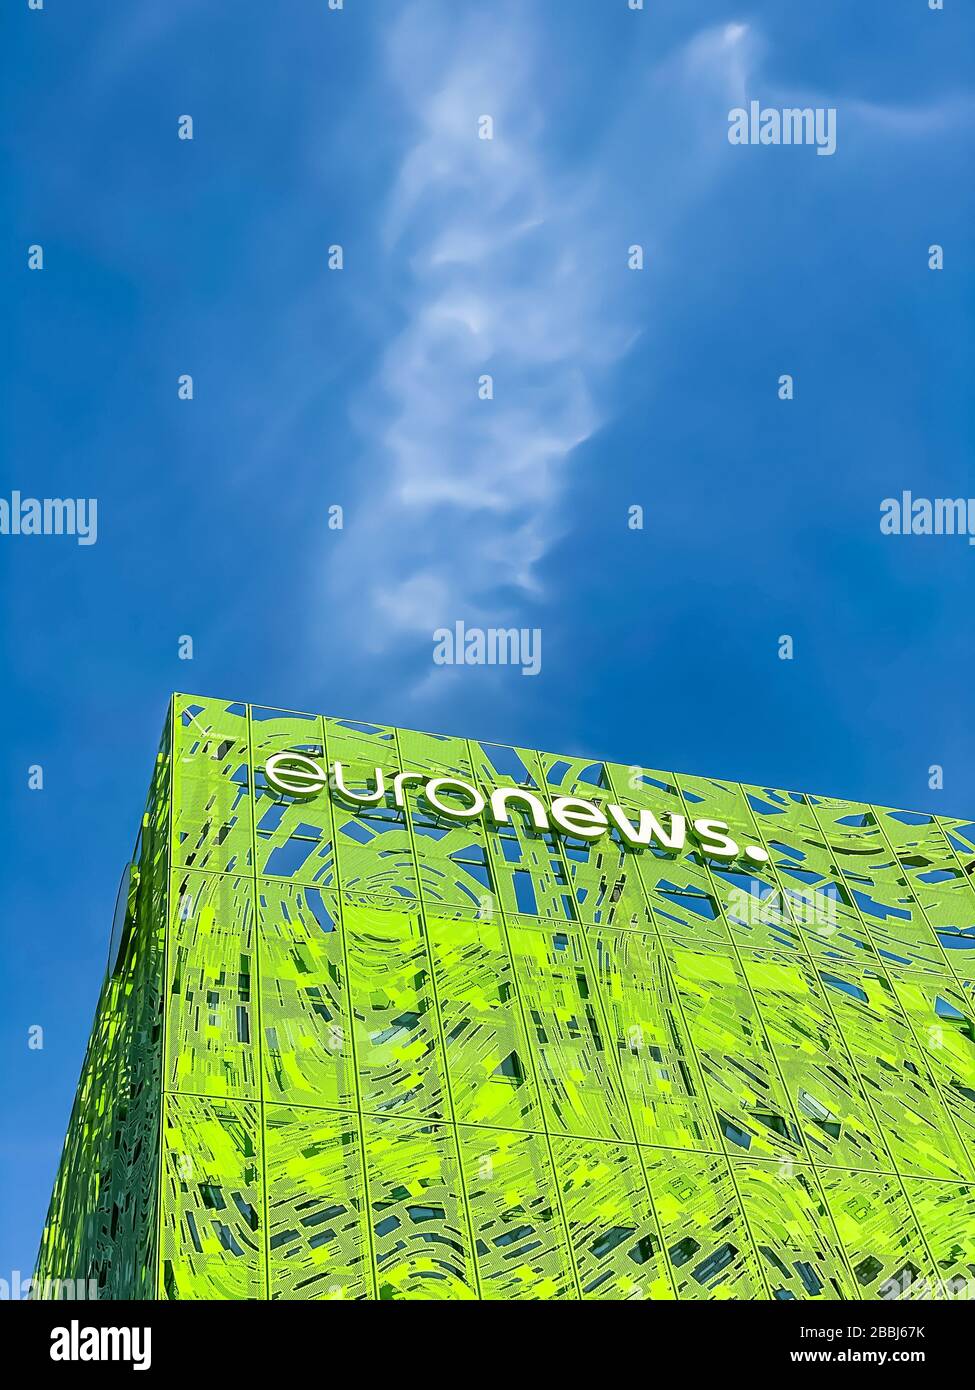 Euronews, das markenlogo des europäischen Pay-TV-Nachrichtennetzes auf dem Headquarter Bürogebäude im Öco-District Confluence. Mobile Fotografie. L Stockfoto